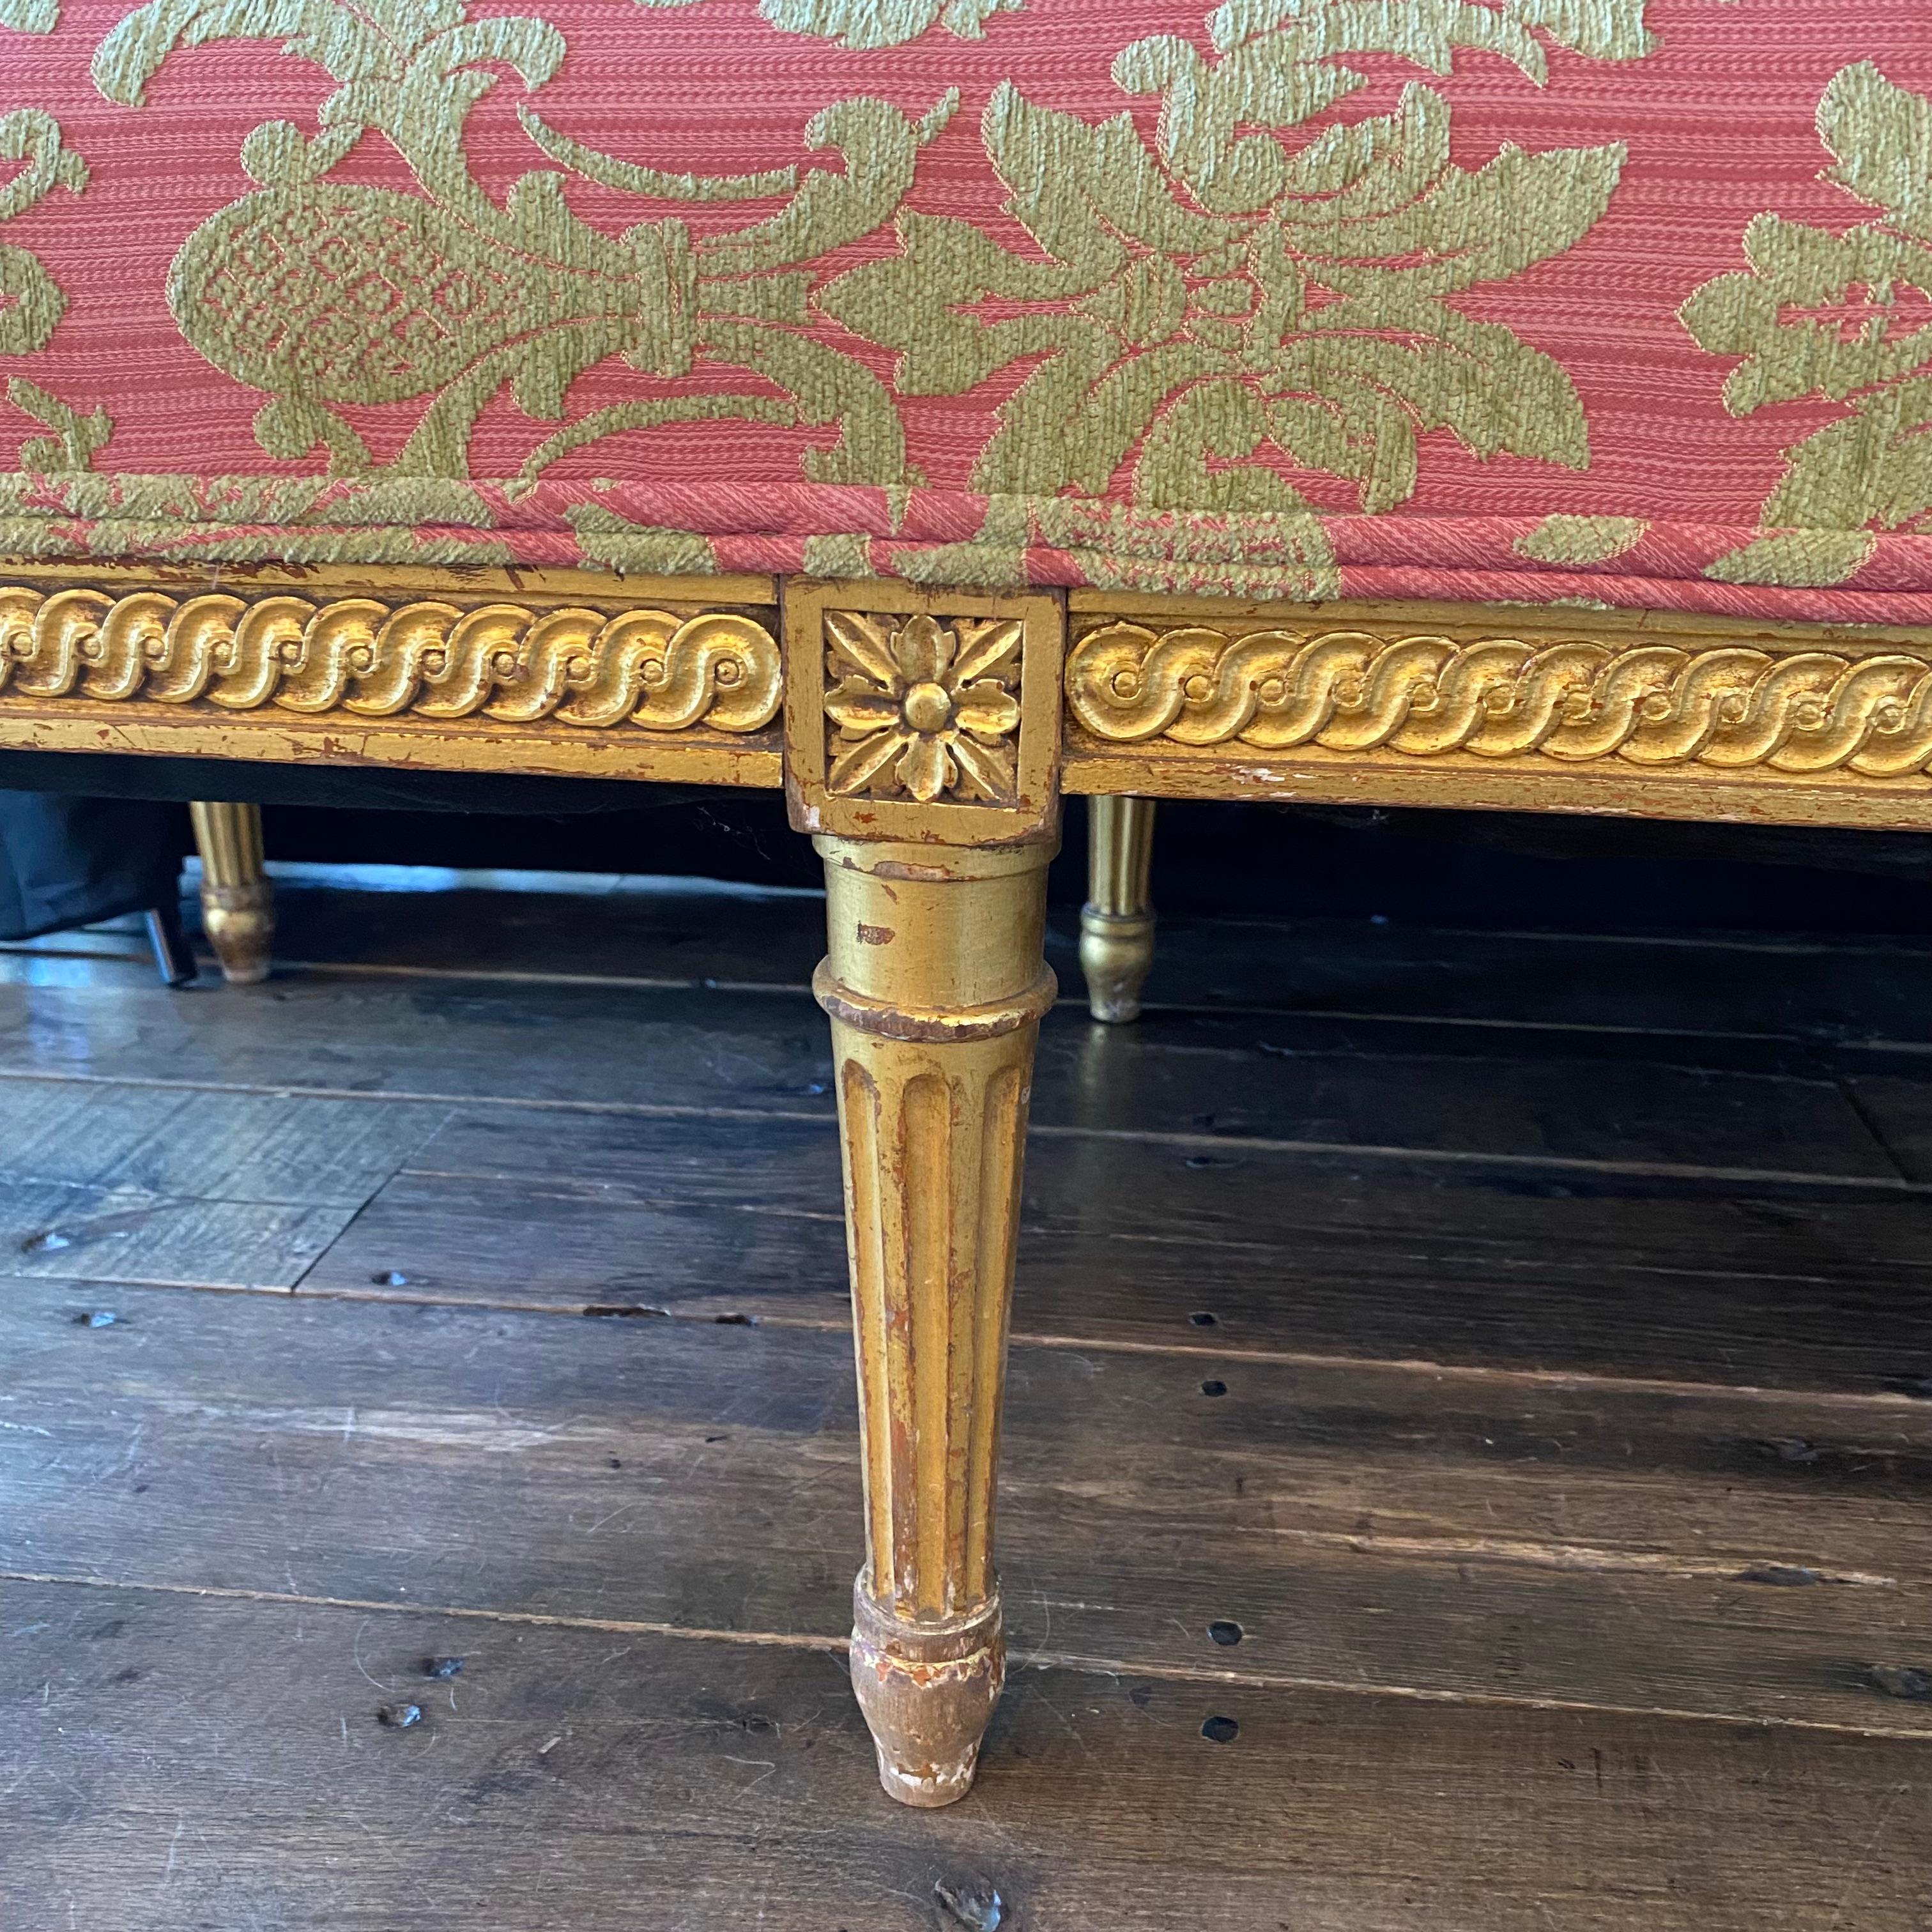 Glamour canapé français de style Louis XVI ayant un cadre en bois sculpté et doré avec une belle patine, tapissé d'un tissu damassé en relief, le tout en très bon état. 
Hauteur des bras 25,5
#5293